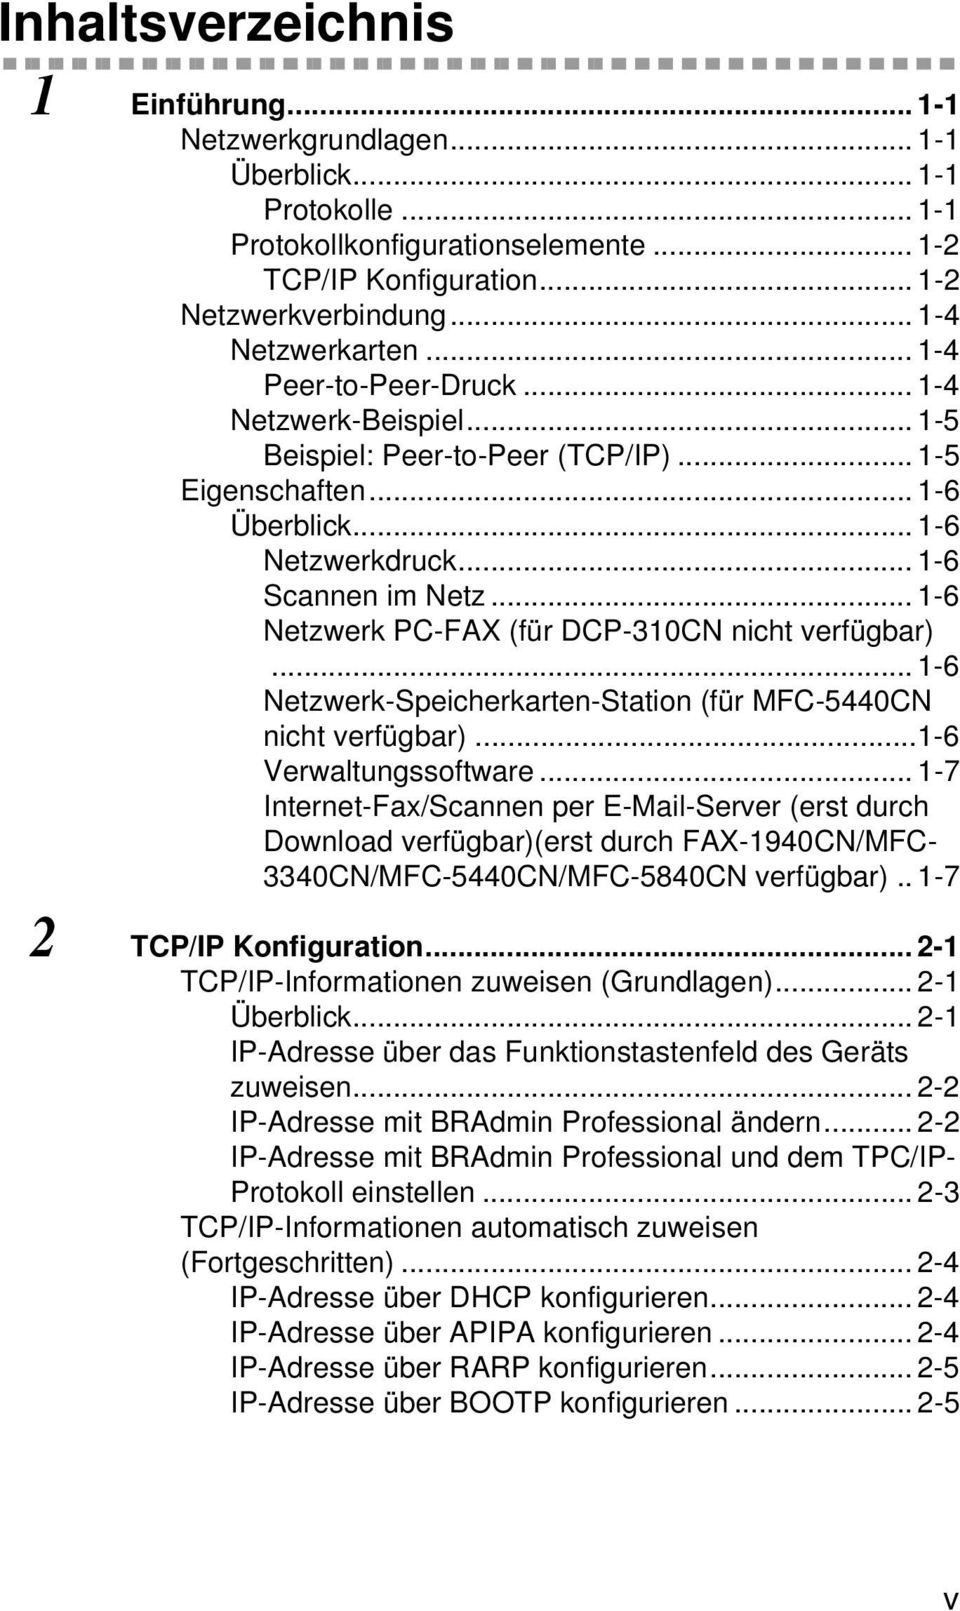 .. 1-6 Netzwerk PC-FAX (für DCP-310CN nicht verfügbar)...1-6 Netzwerk-Speicherkarten-Station (für MFC-5440CN nicht verfügbar)...1-6 Verwaltungssoftware.